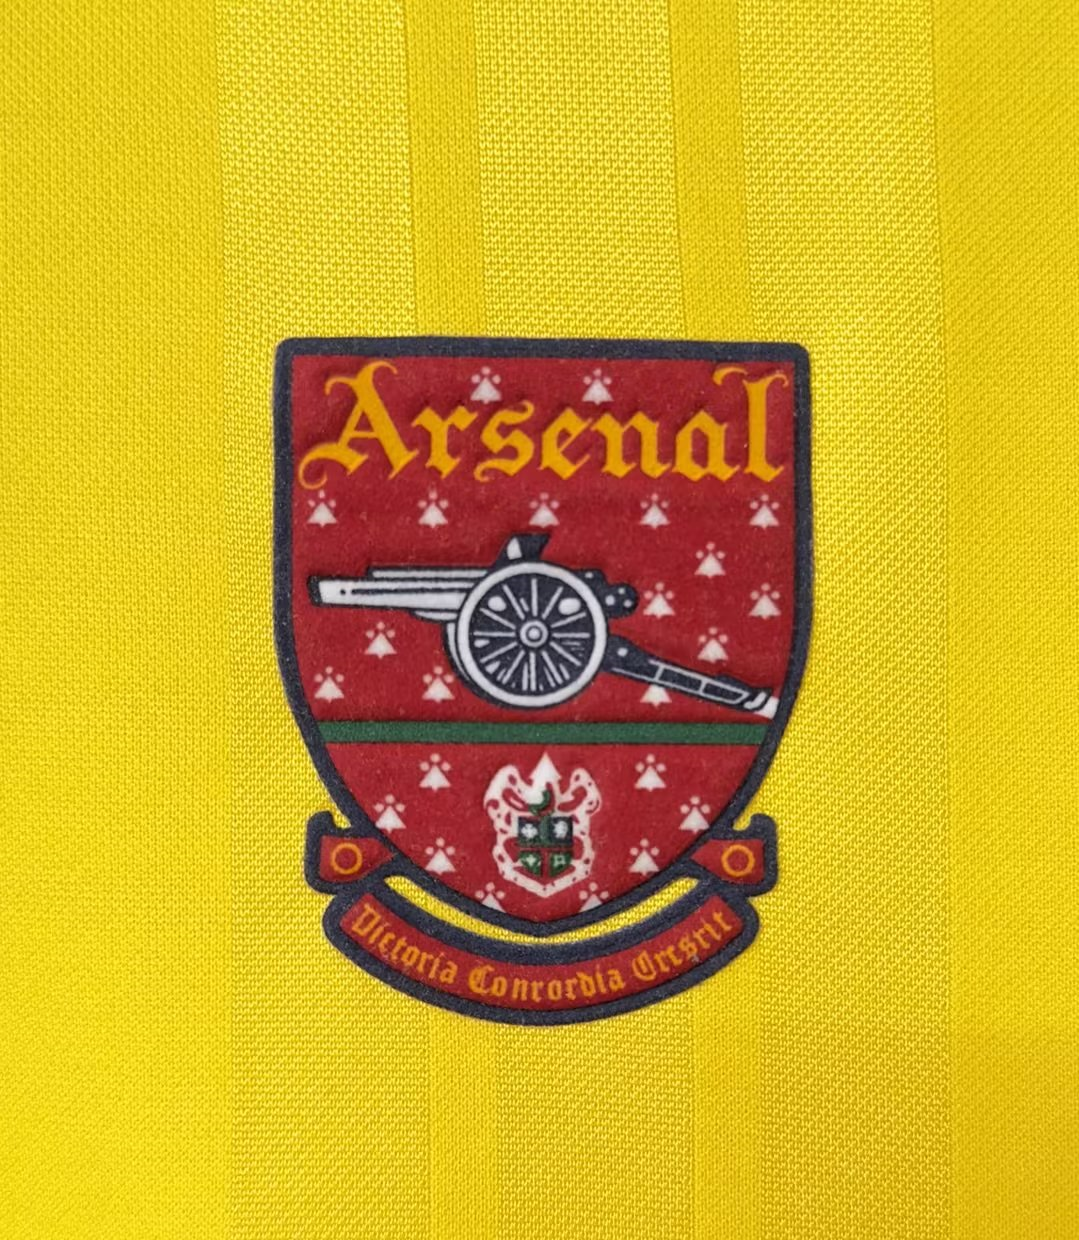 Men's Arsenal Retro Away Jersey 1993/94